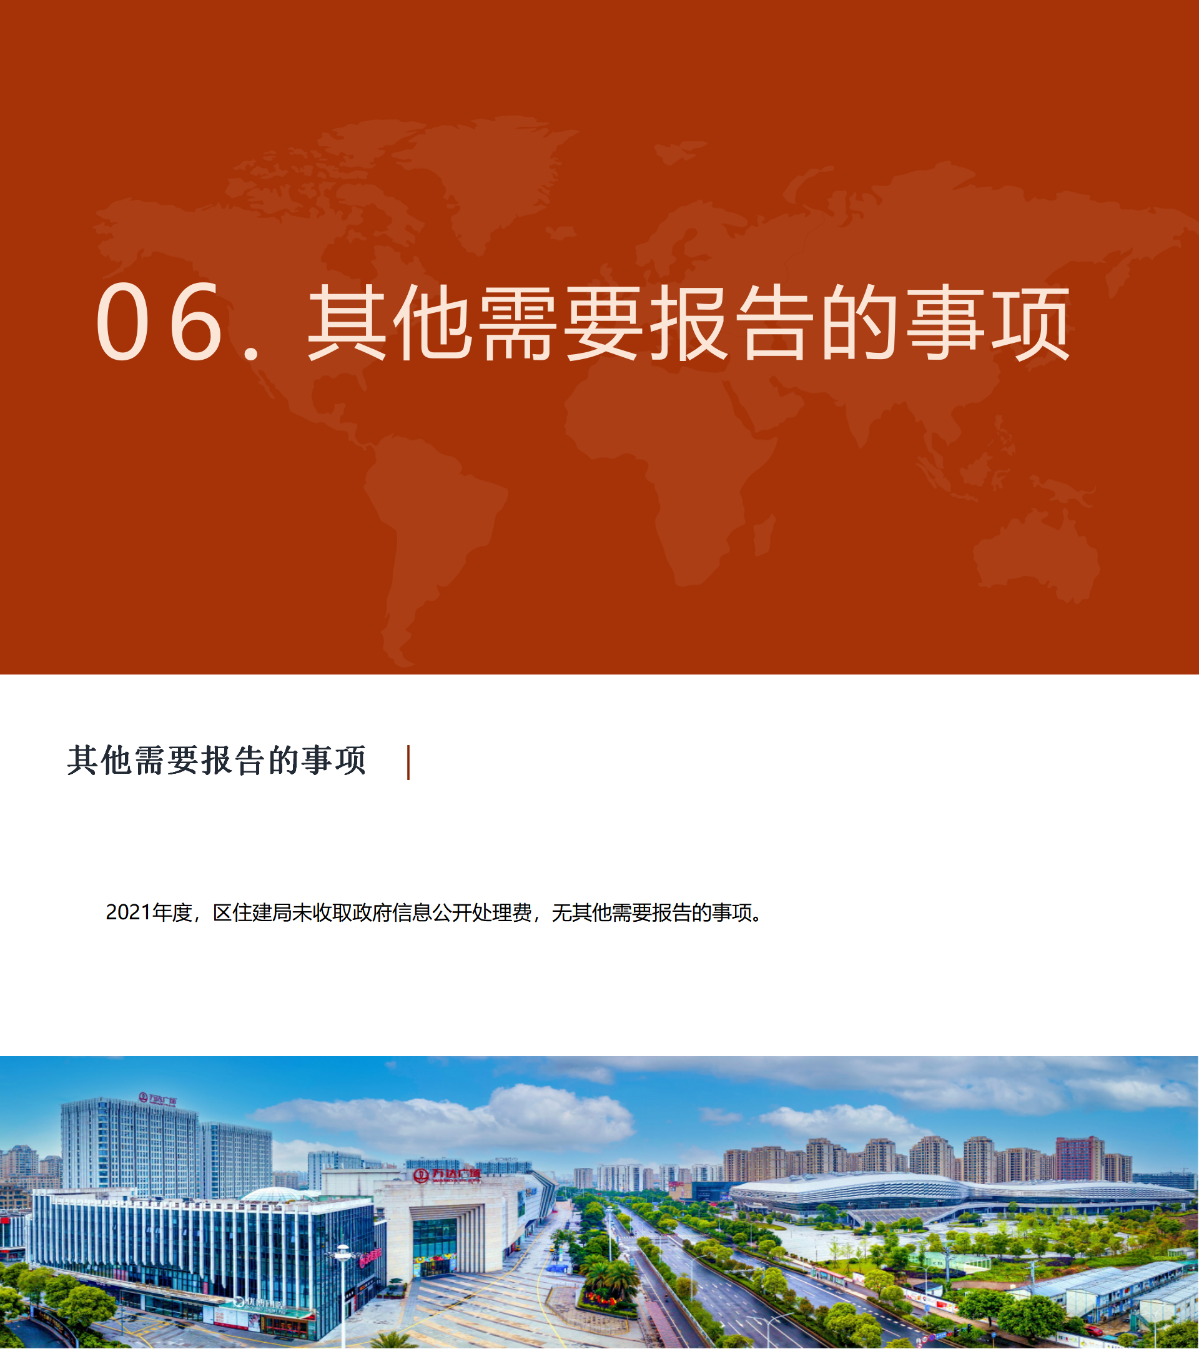 03温州市龙湾区住房和城乡建设局2021年政府信息公开工作年度报告_02.png